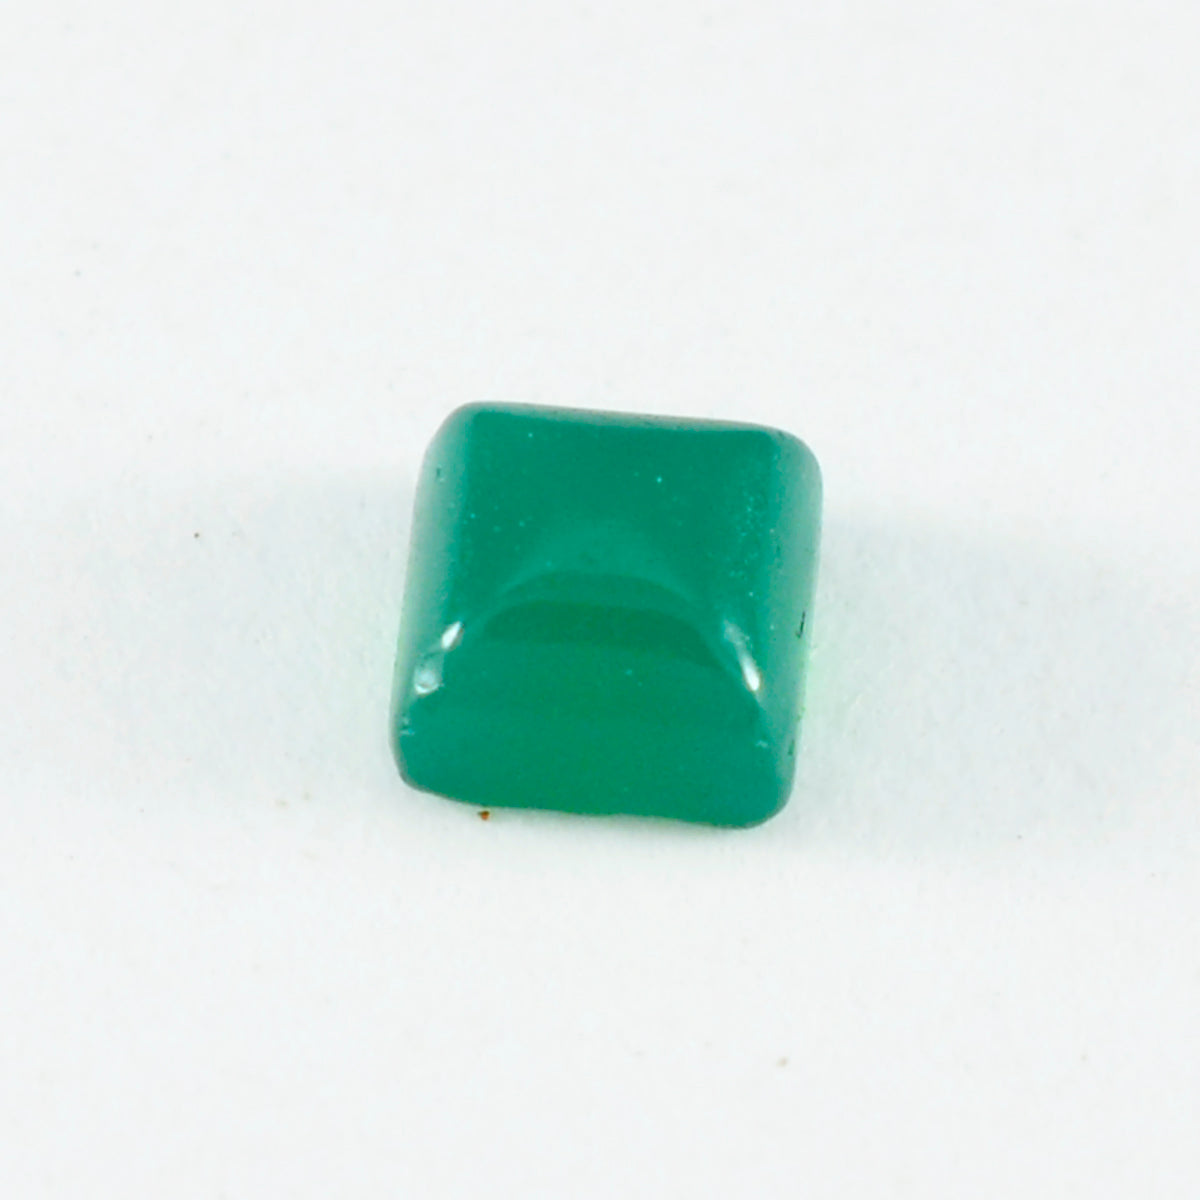 Riyogems 1 Stück grüner Onyx-Cabochon, 11 x 11 mm, quadratische Form, schöner Qualitätsstein